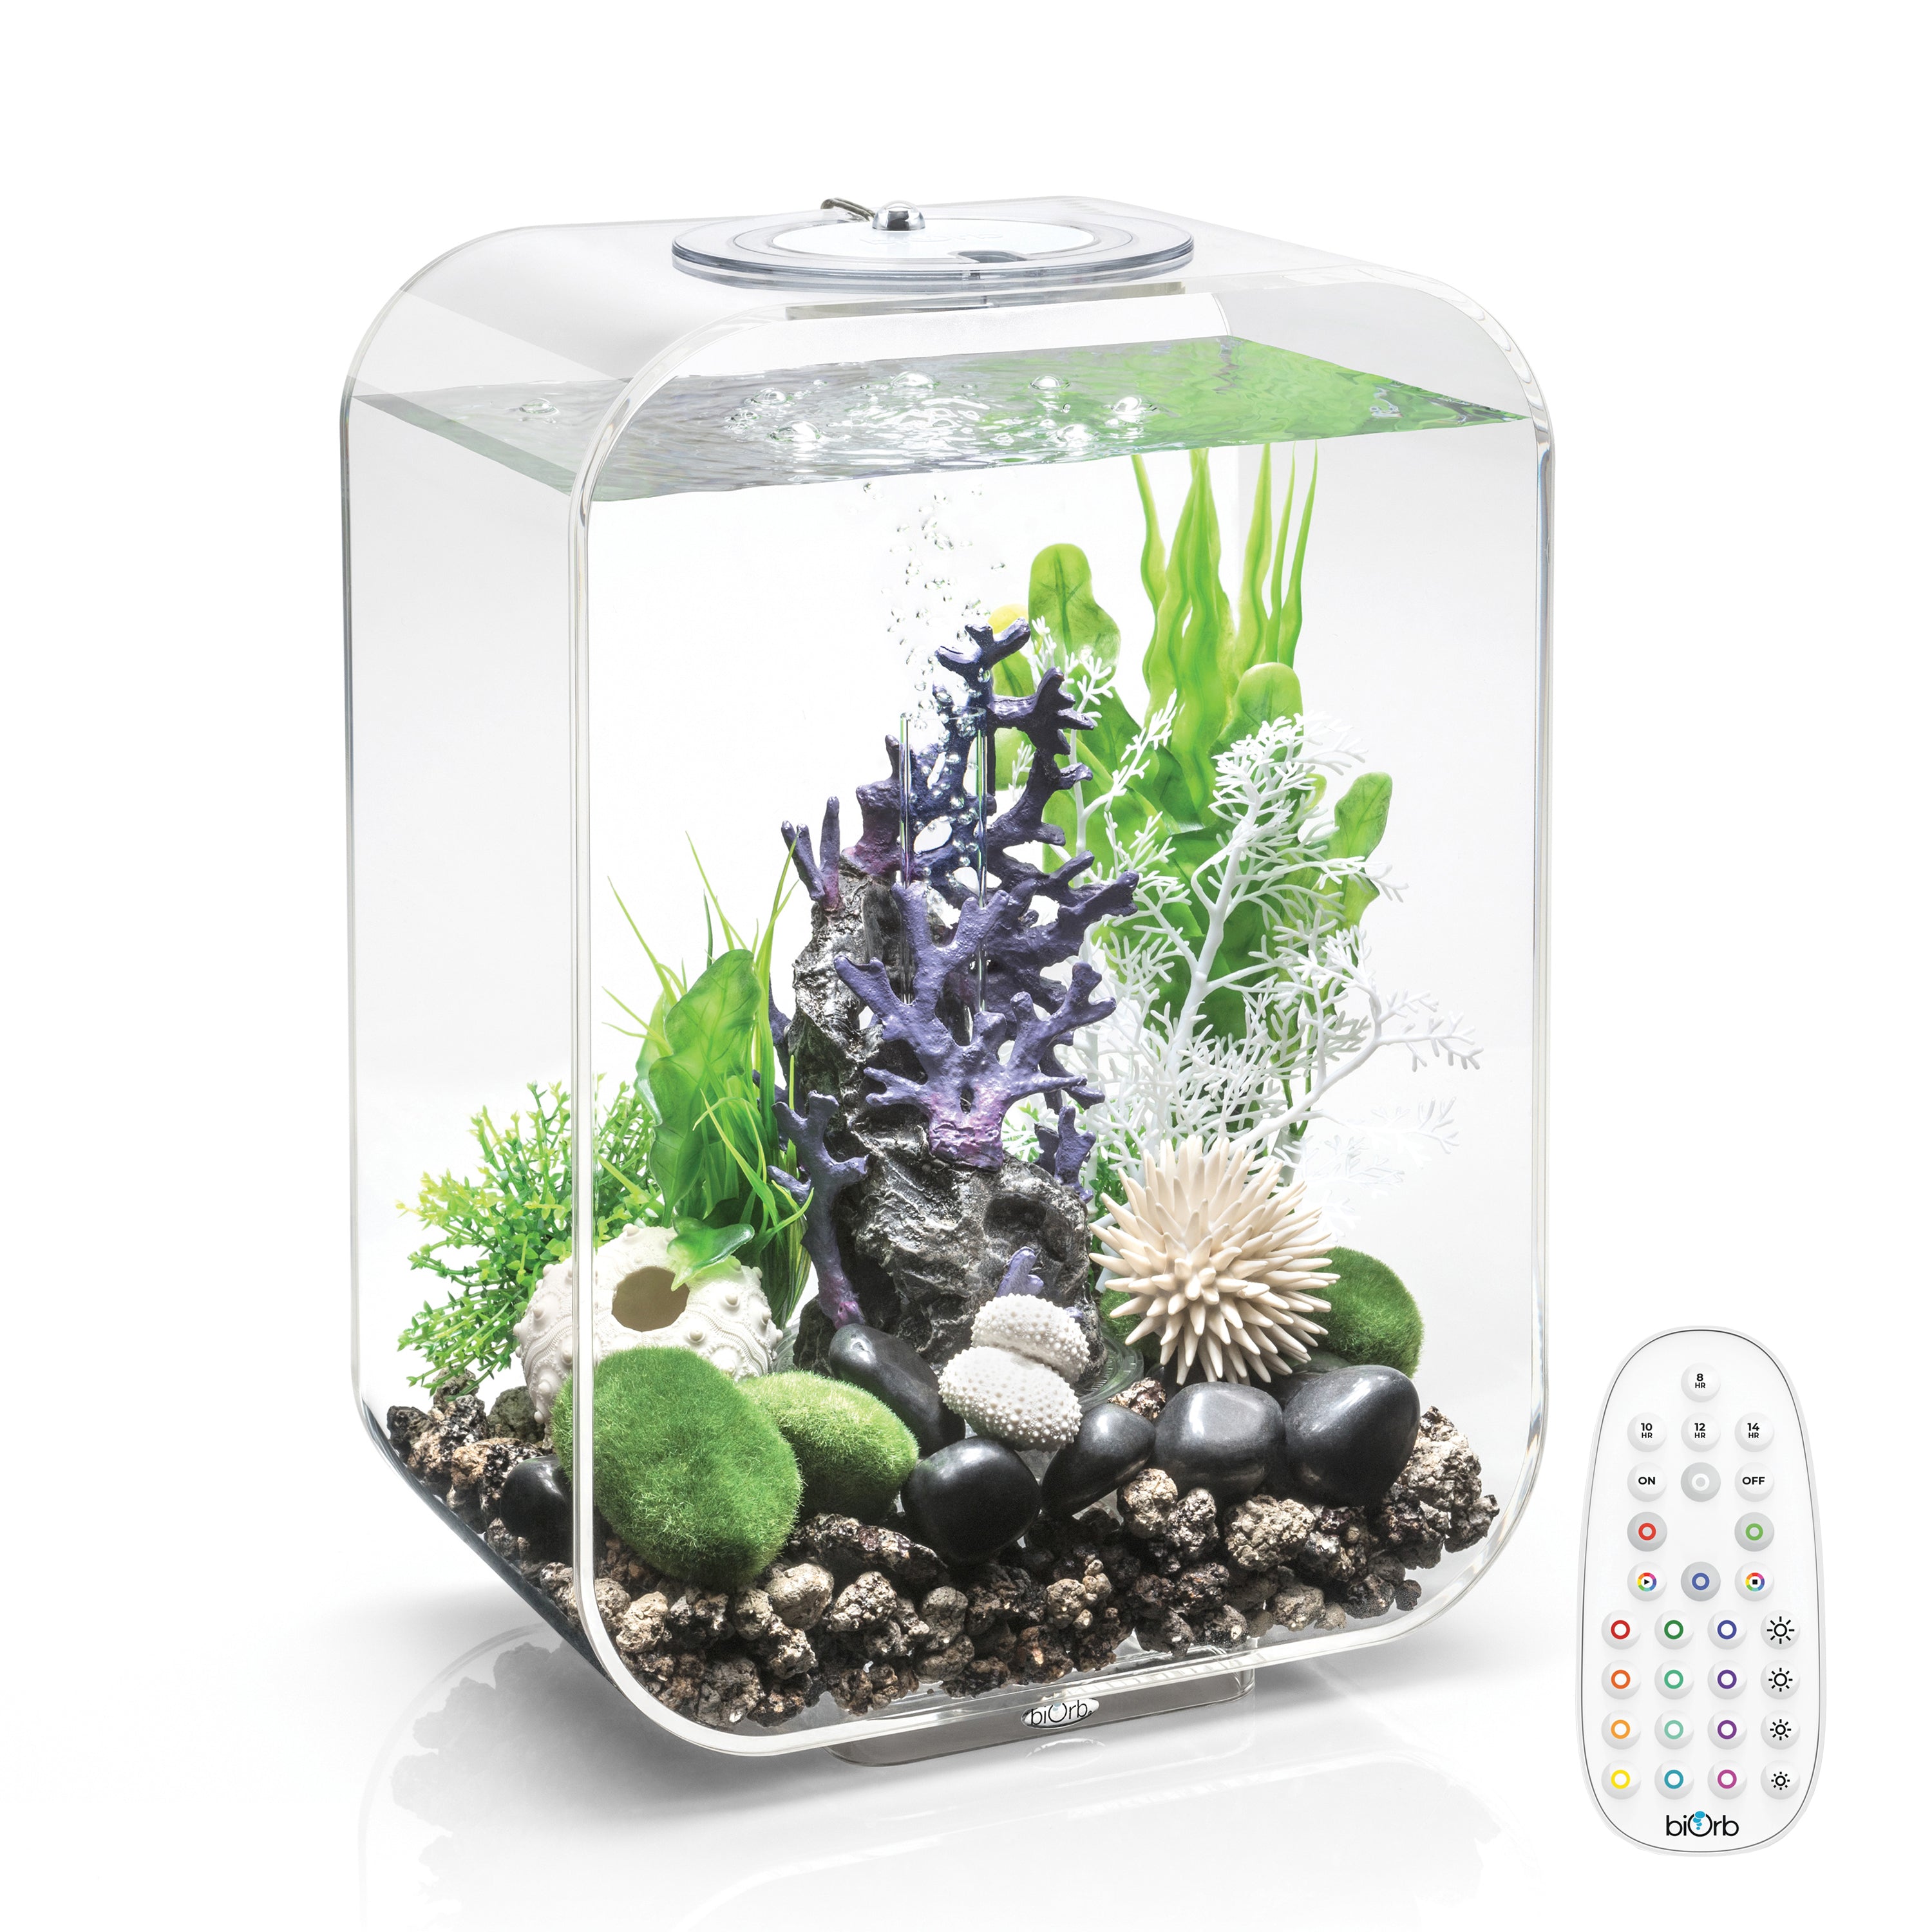 LIFE 15 Aquarium with MCR Light - 4 gallon available in transparent